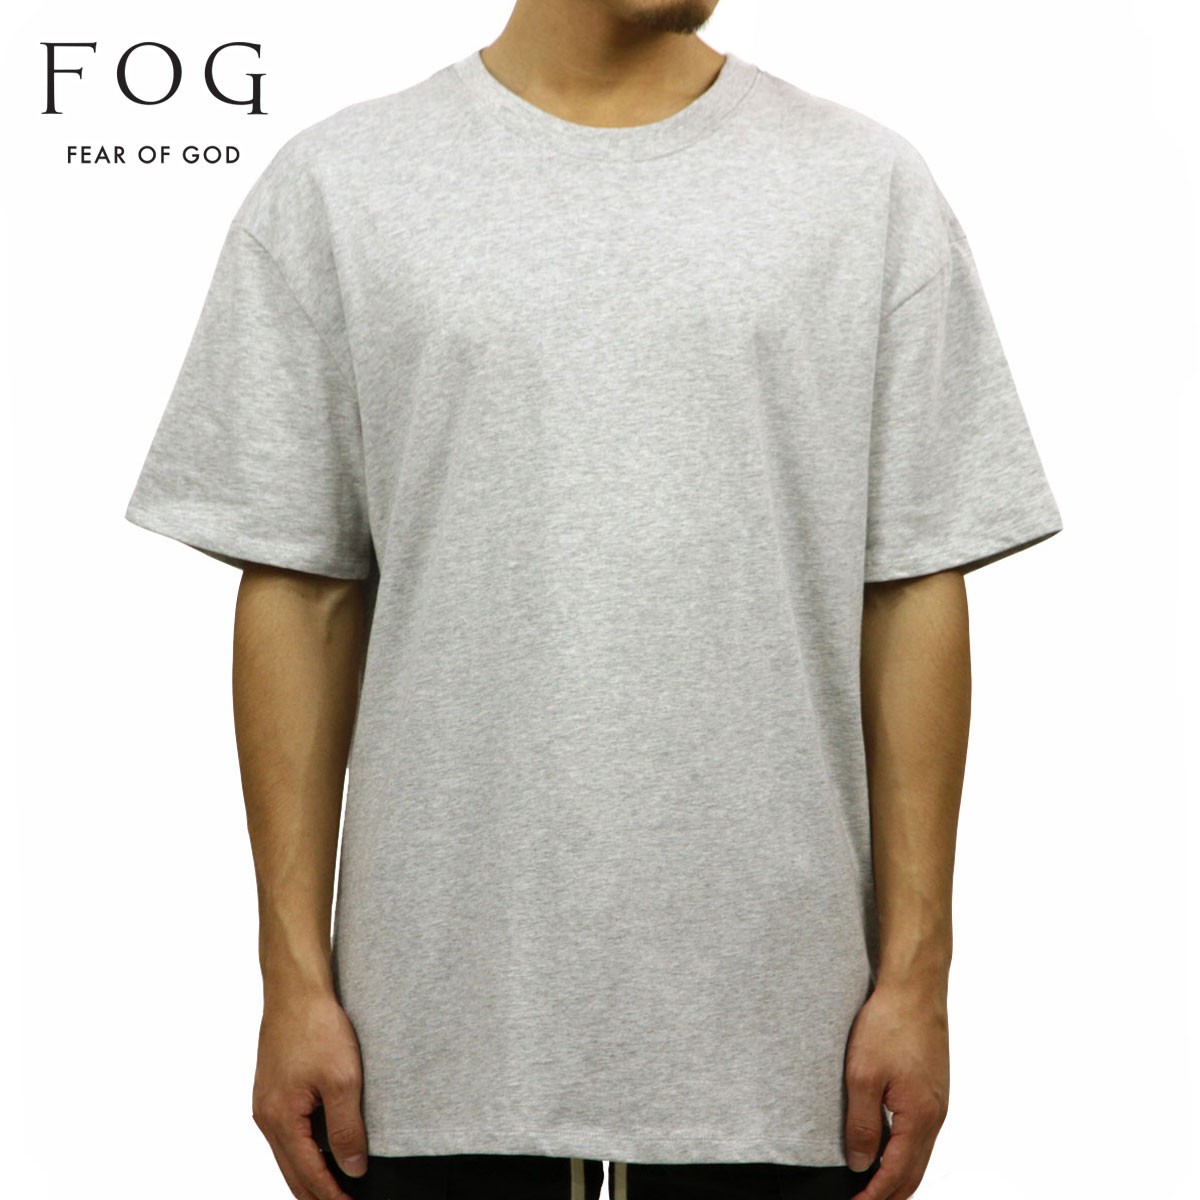 フィアオブゴッド fog essentials Tシャツ メンズ 正規品 FEAR OF GOD エッセンシャルズ クルーネック 無地 半袖Tシャツ  FOG - FEAR OF GOD ESSENTIALS BOXY T-SHIRT HEATHER GREY AA5B B1C C1D D1E 